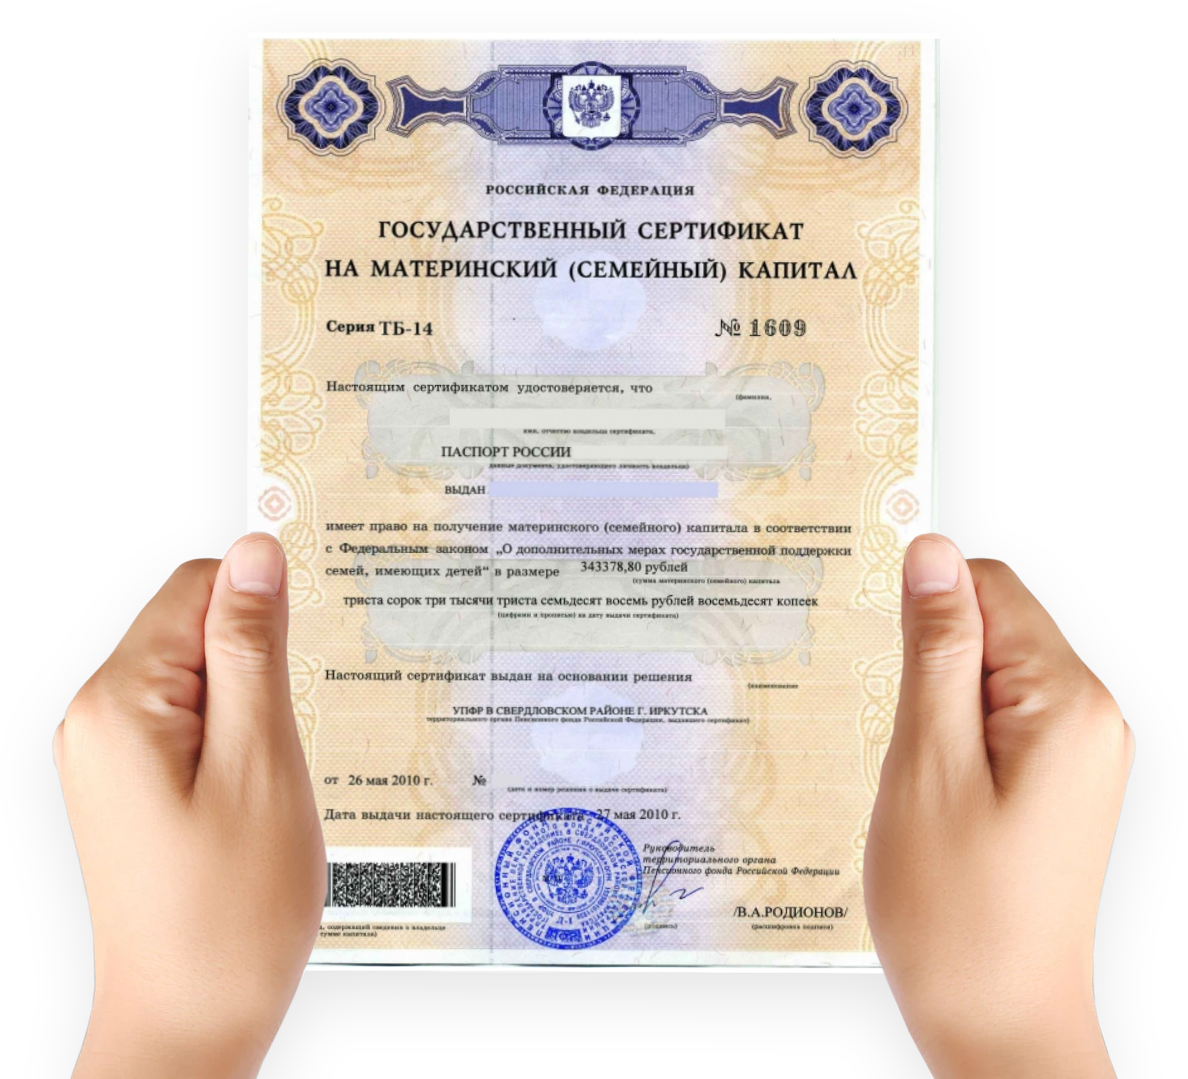 Покупка сертификата материнского капитала. Как выглядит сертификат на мат капитал. Как выглядит мат капитал сертификат в электронном виде. Как выглядит документ на материнский капитал. Материнский капитал на второго ребенка сертификат как выглядит.